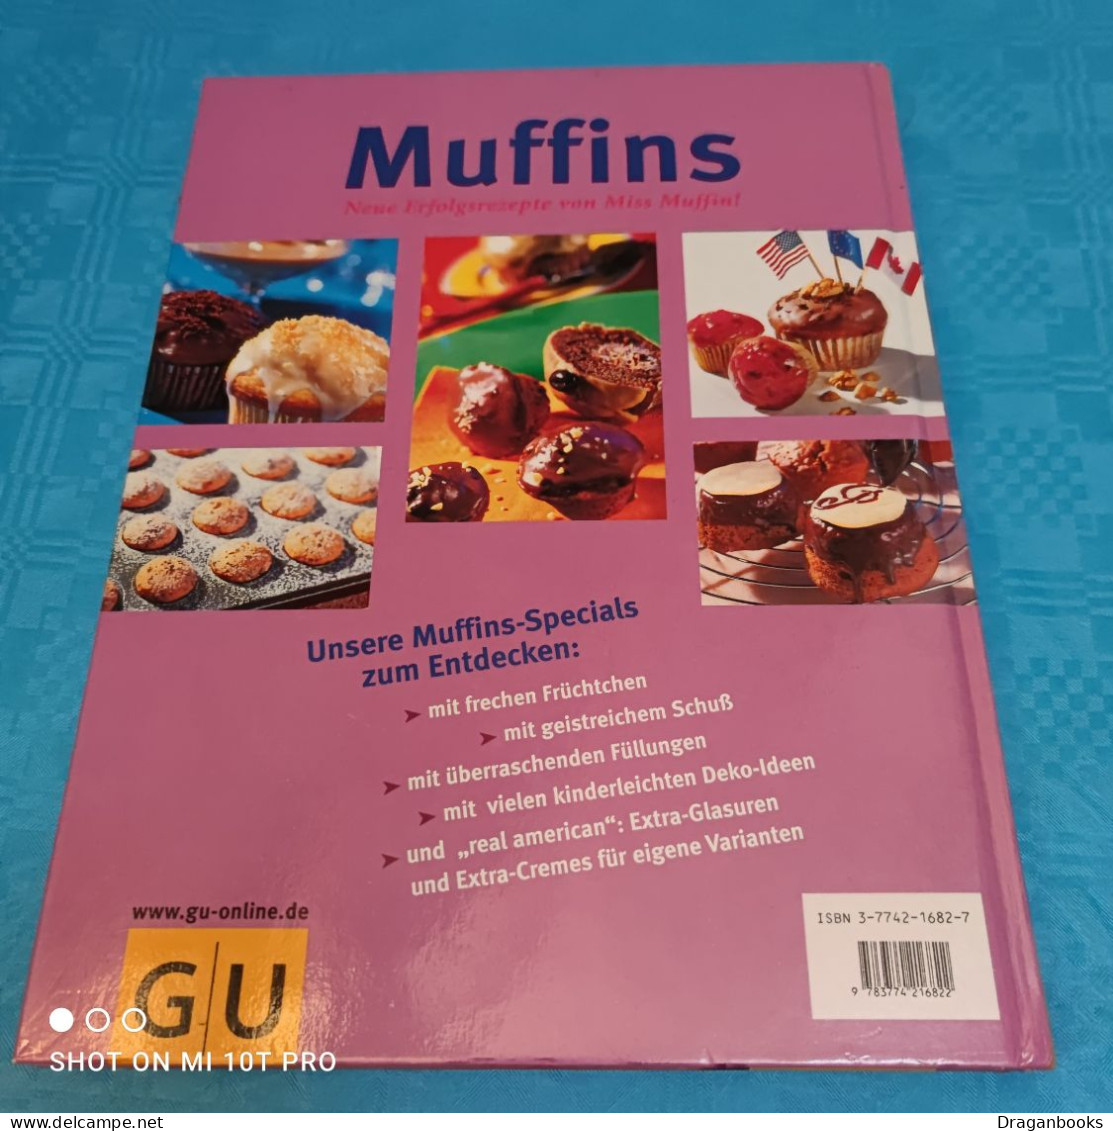 Jutta Renz - Muffins - Manger & Boire